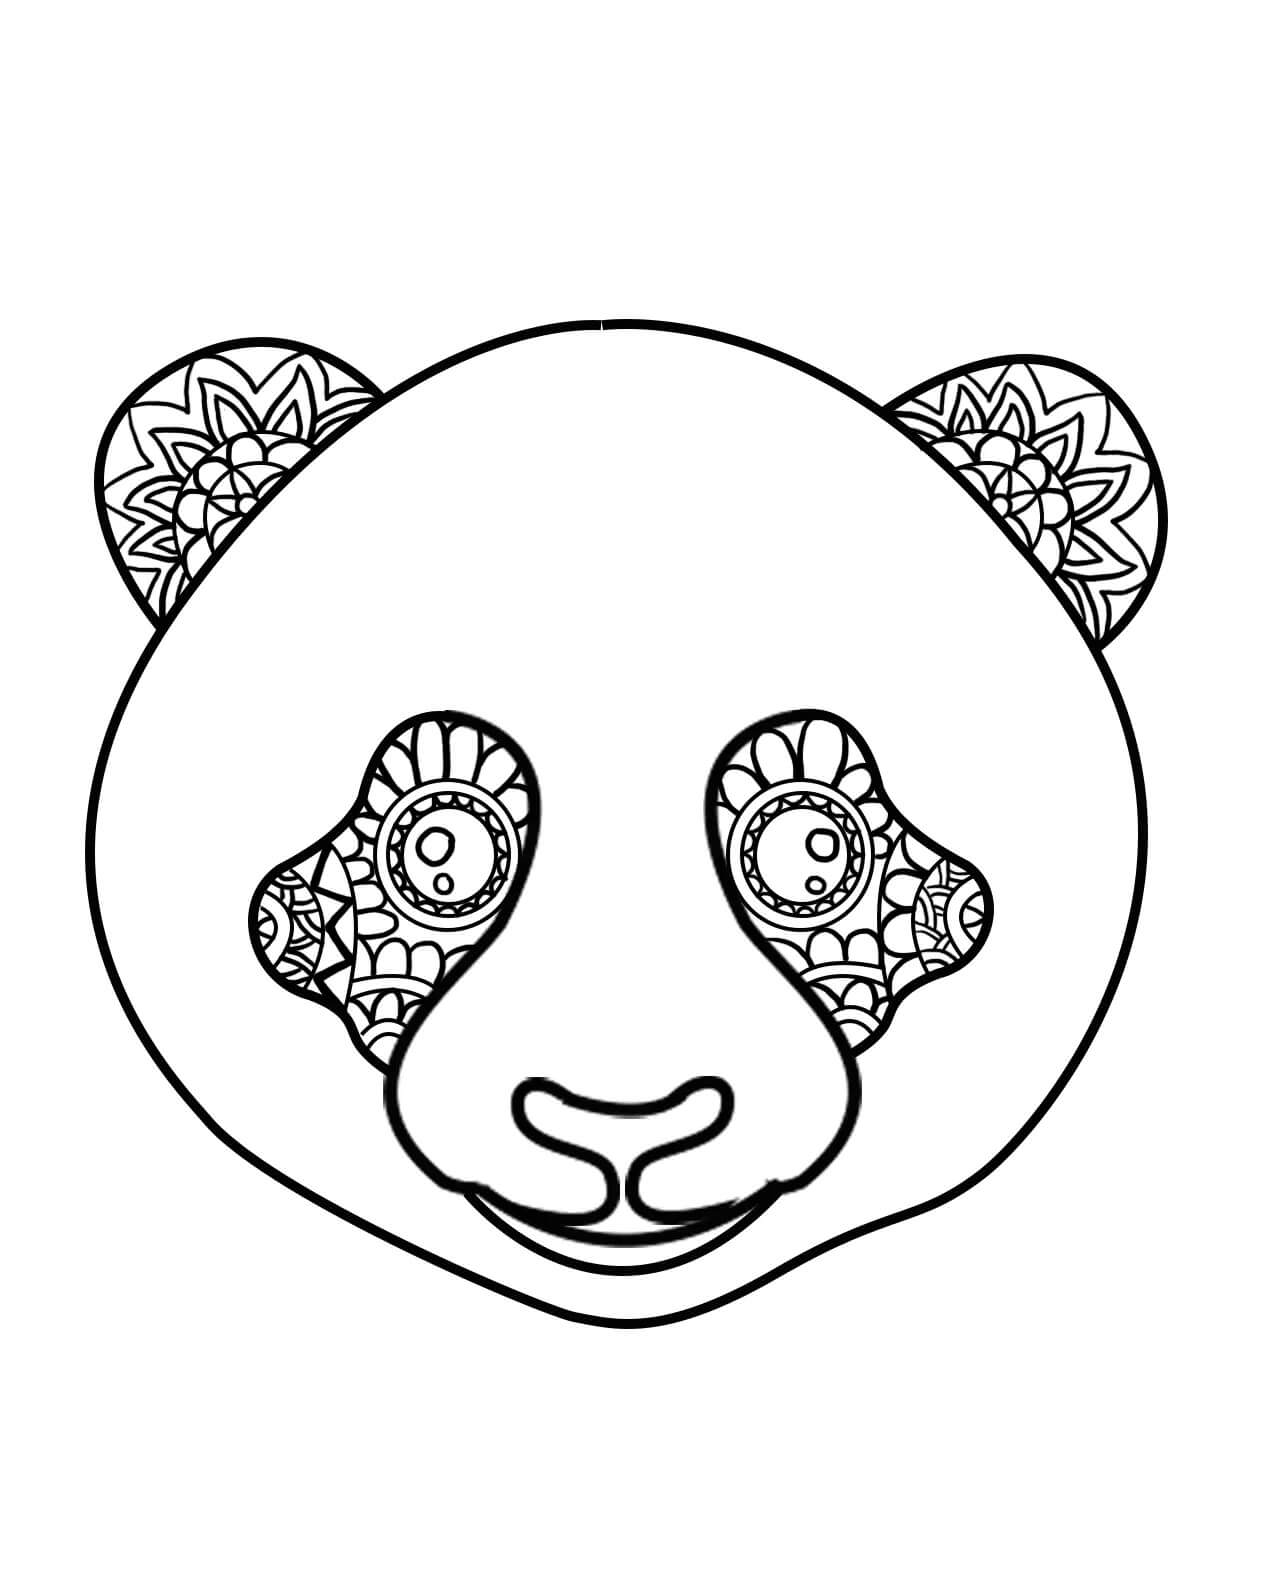 Mandala Cabeça de Panda para colorir